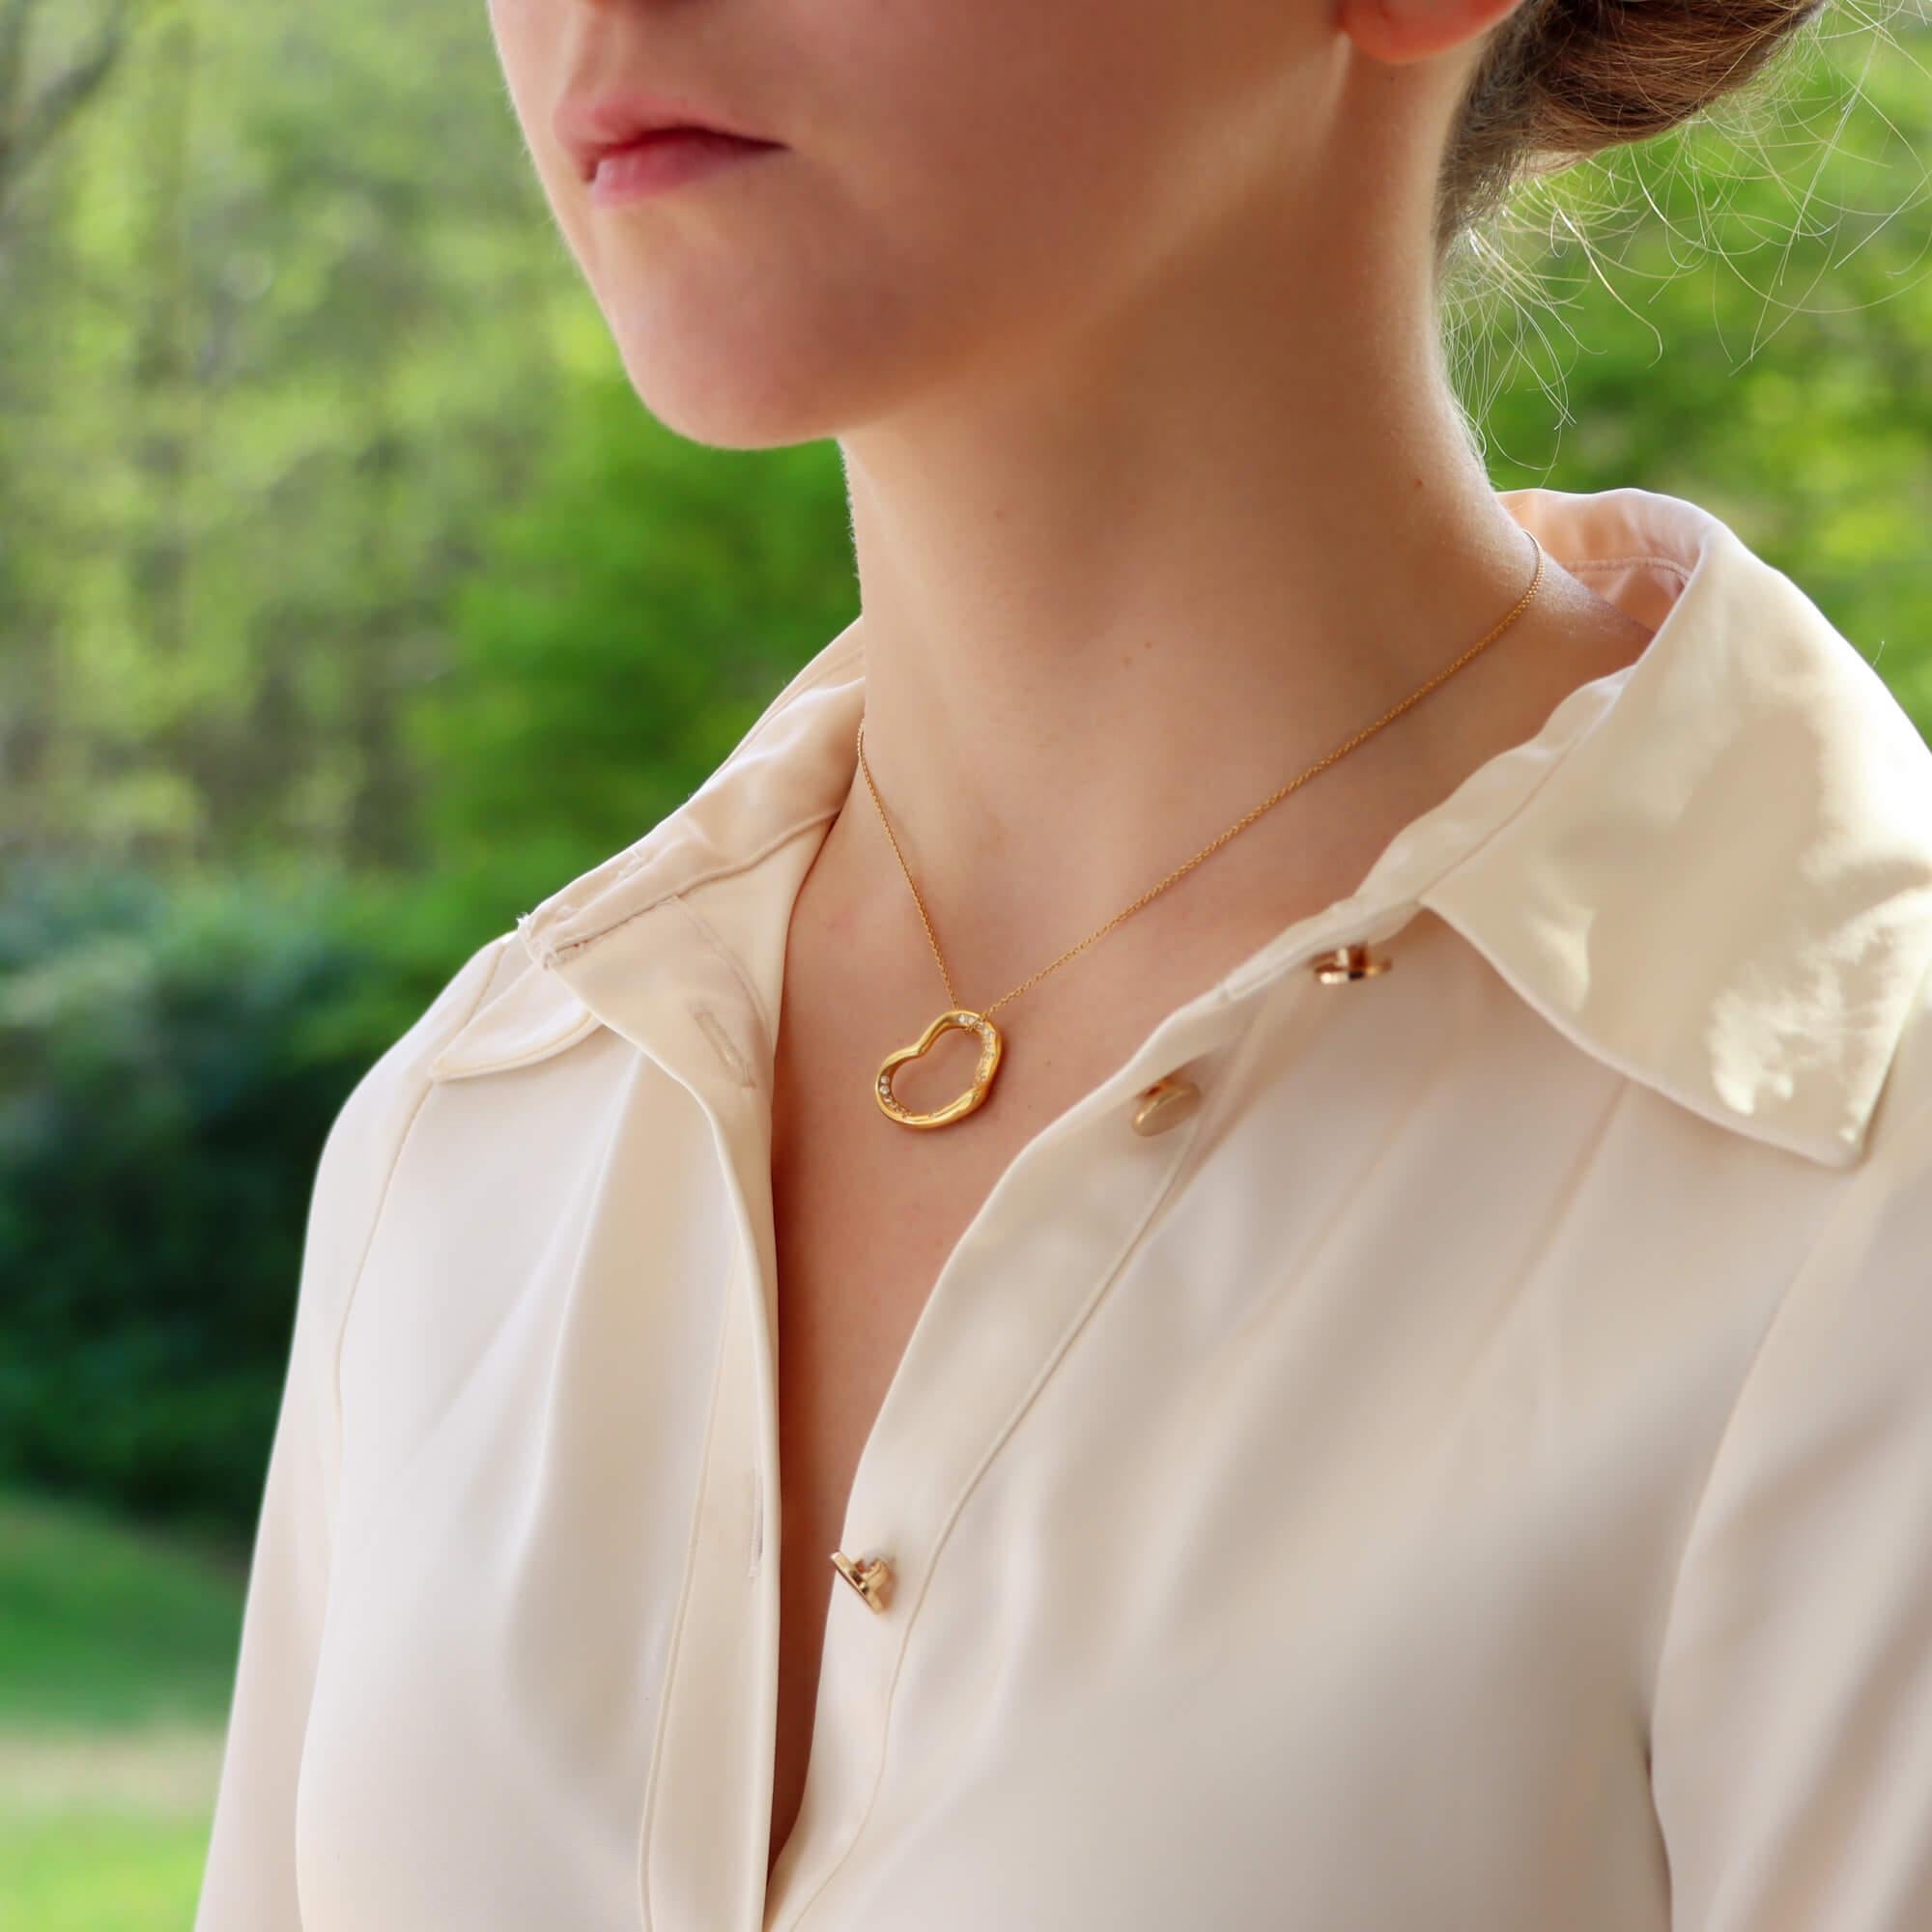 Eine schöne Vintage Elsa Peretti für Tiffany & Co. offenes Herz Diamant-Halskette in massivem 18k Gelbgold.

Der Anhänger zeigt das ikonische offene Herzdesign von Elsa Peretti und ist mit 36 einzelnen runden Diamanten im Brillantschliff besetzt.